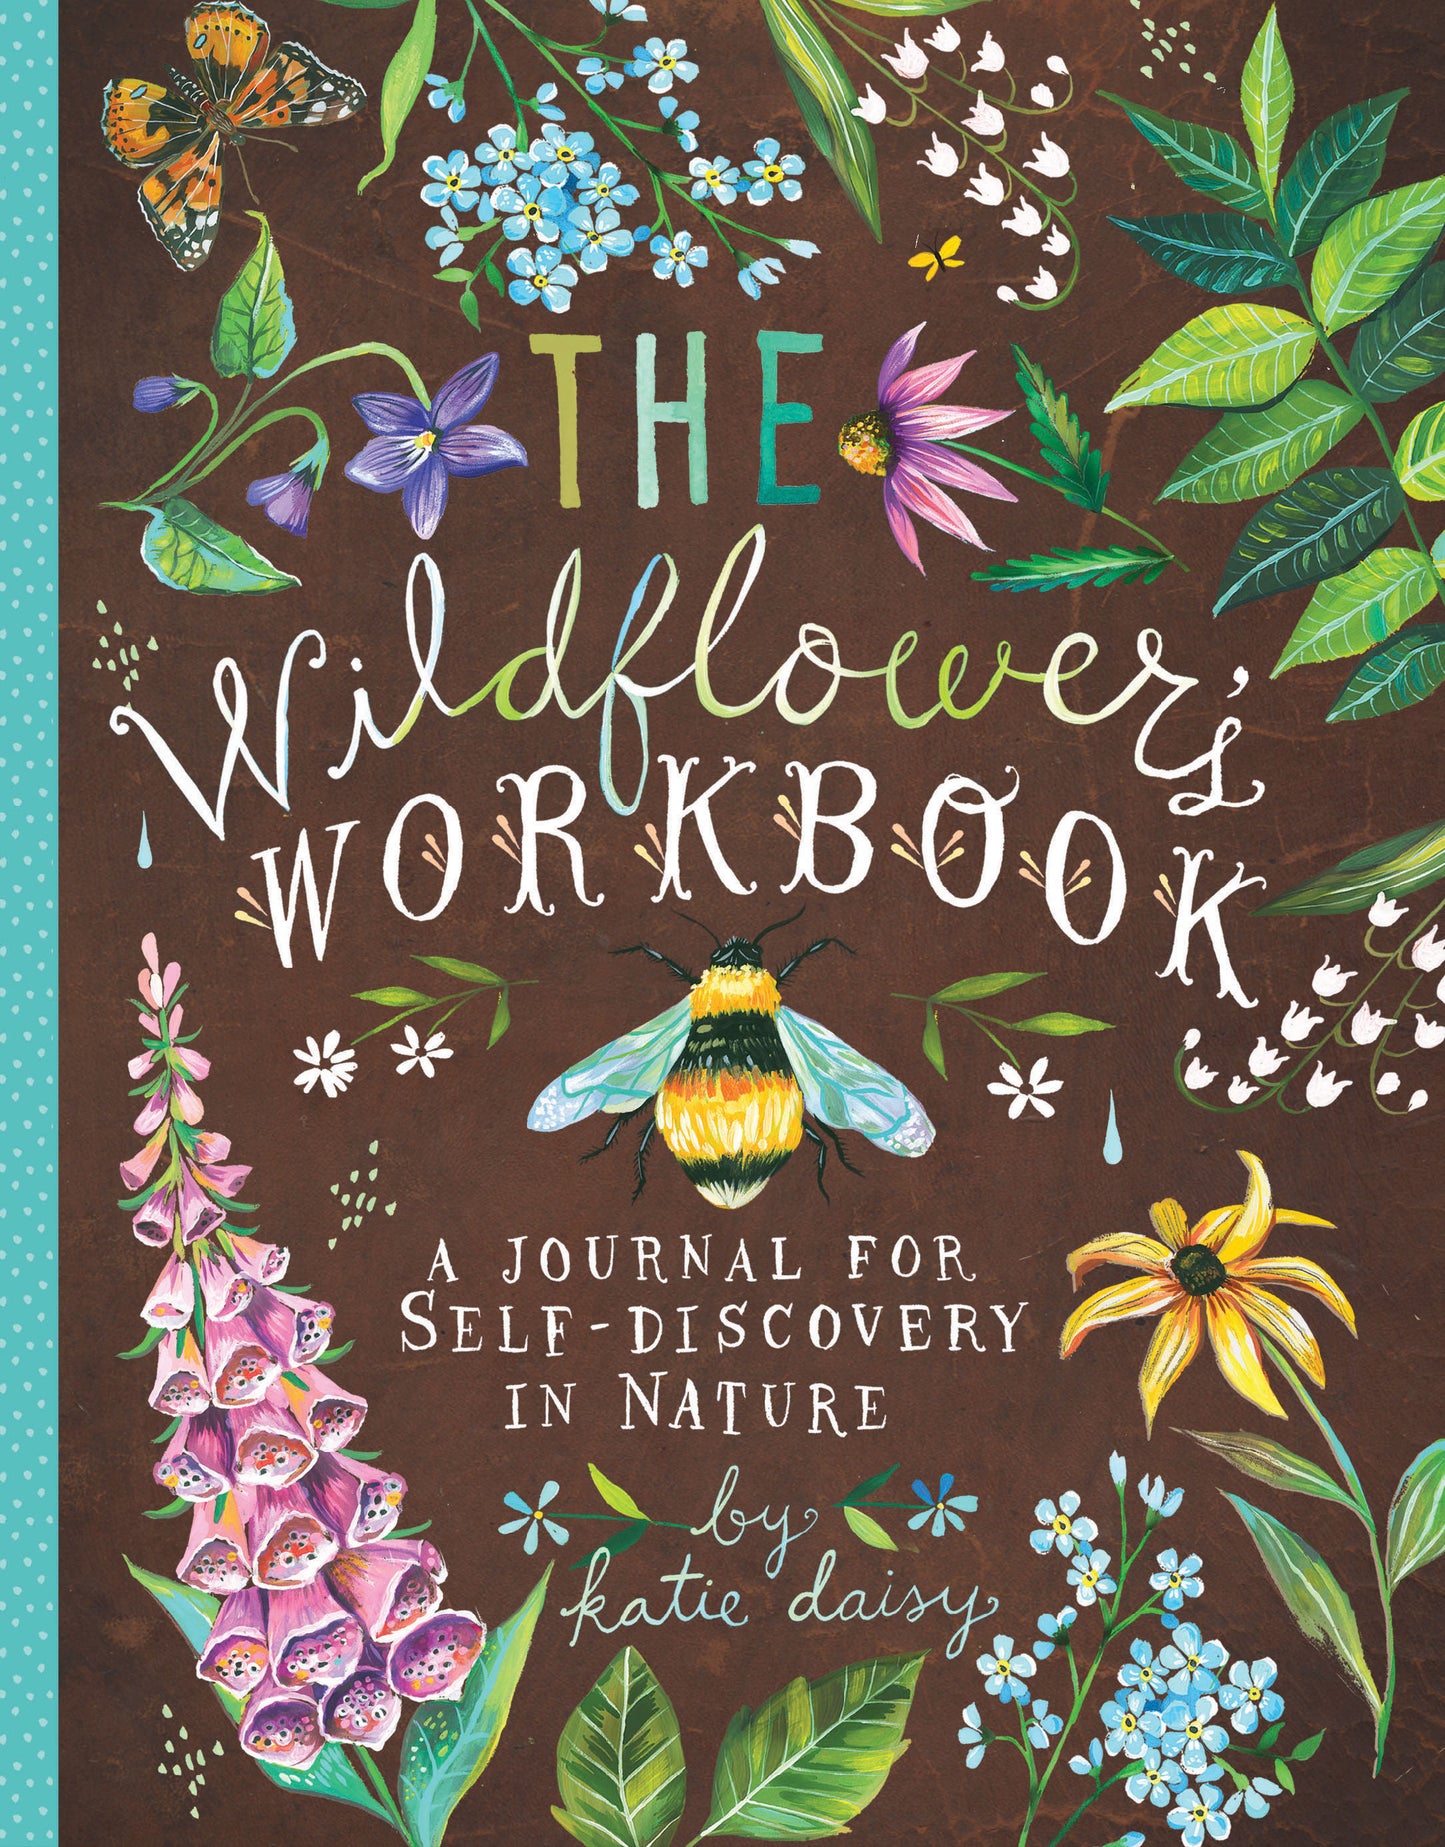 Wildflower Workbook